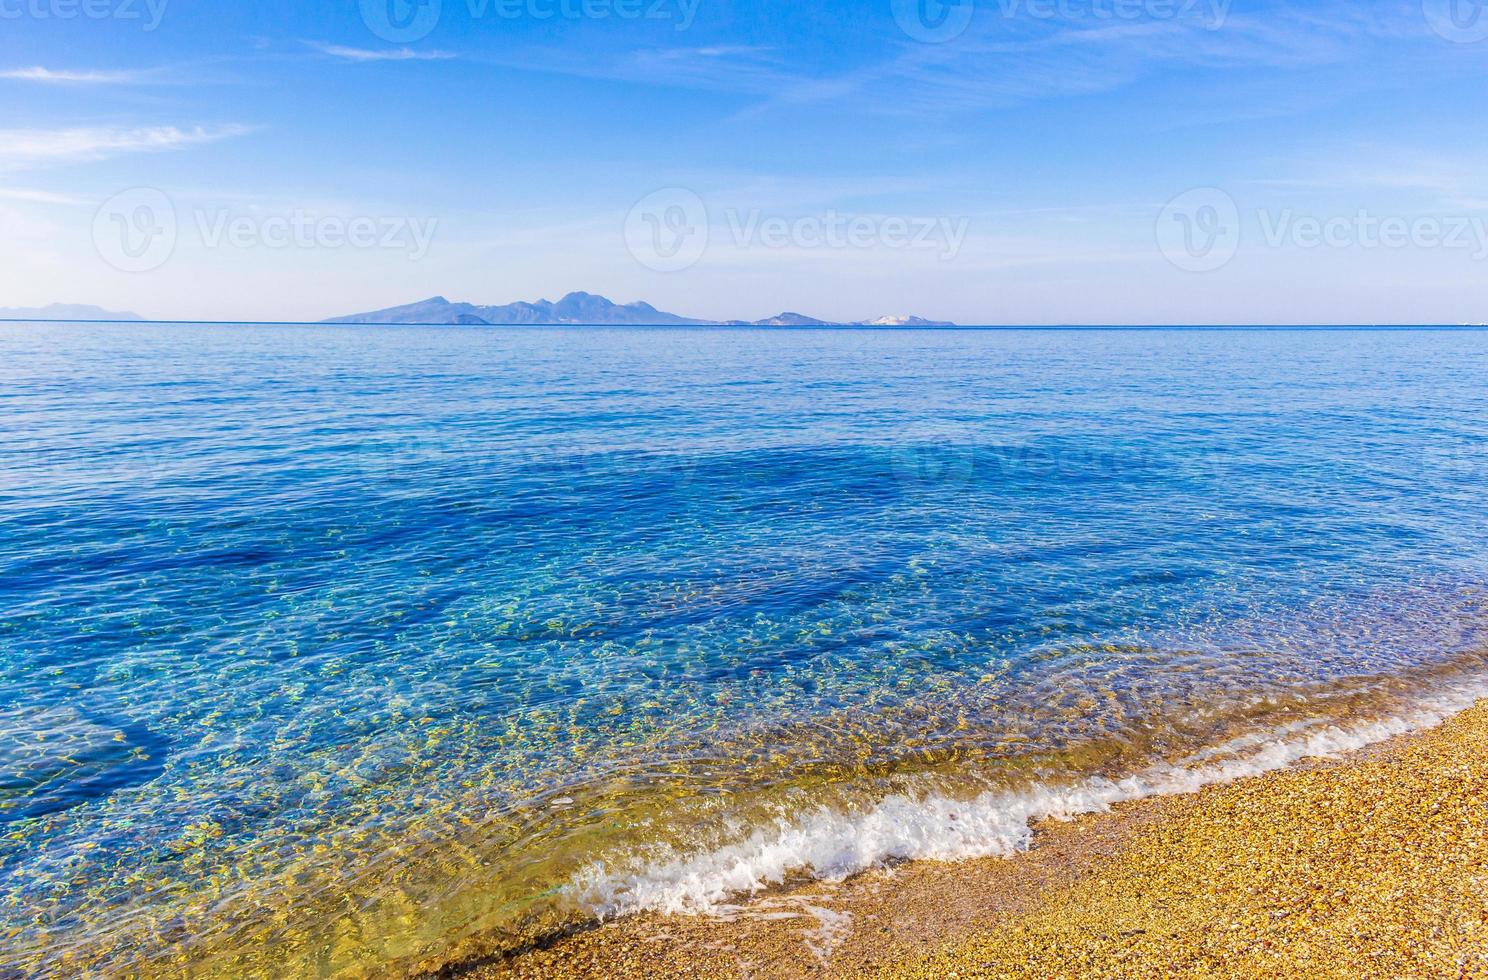 mais belas praias da ilha de kos na vista panorâmica da grécia. foto